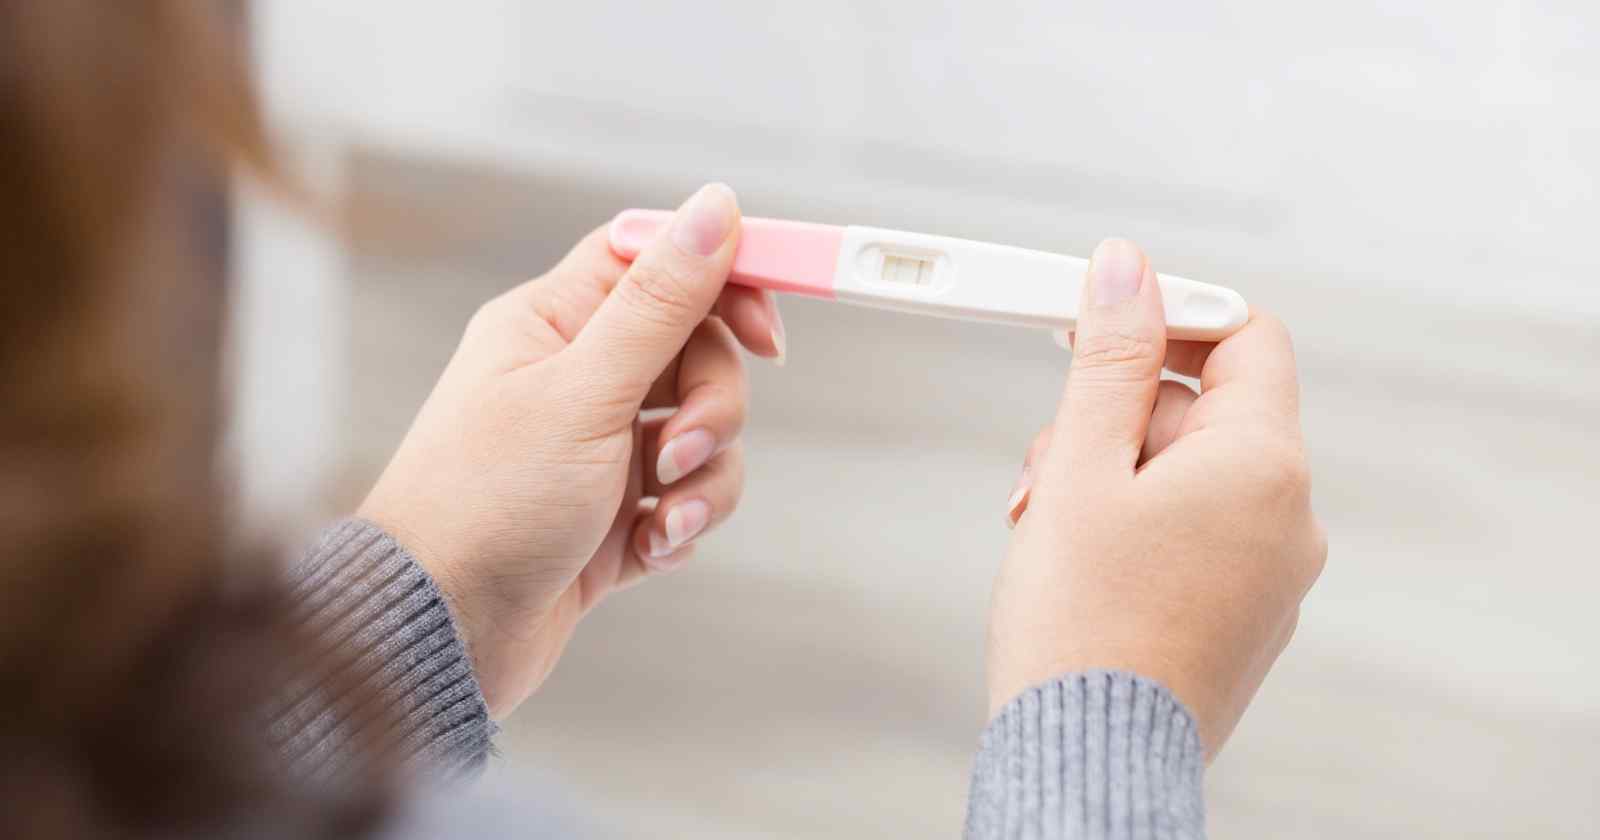 Što znači dobiti negativan rezultat testa za utvrđivanje trudnoće?